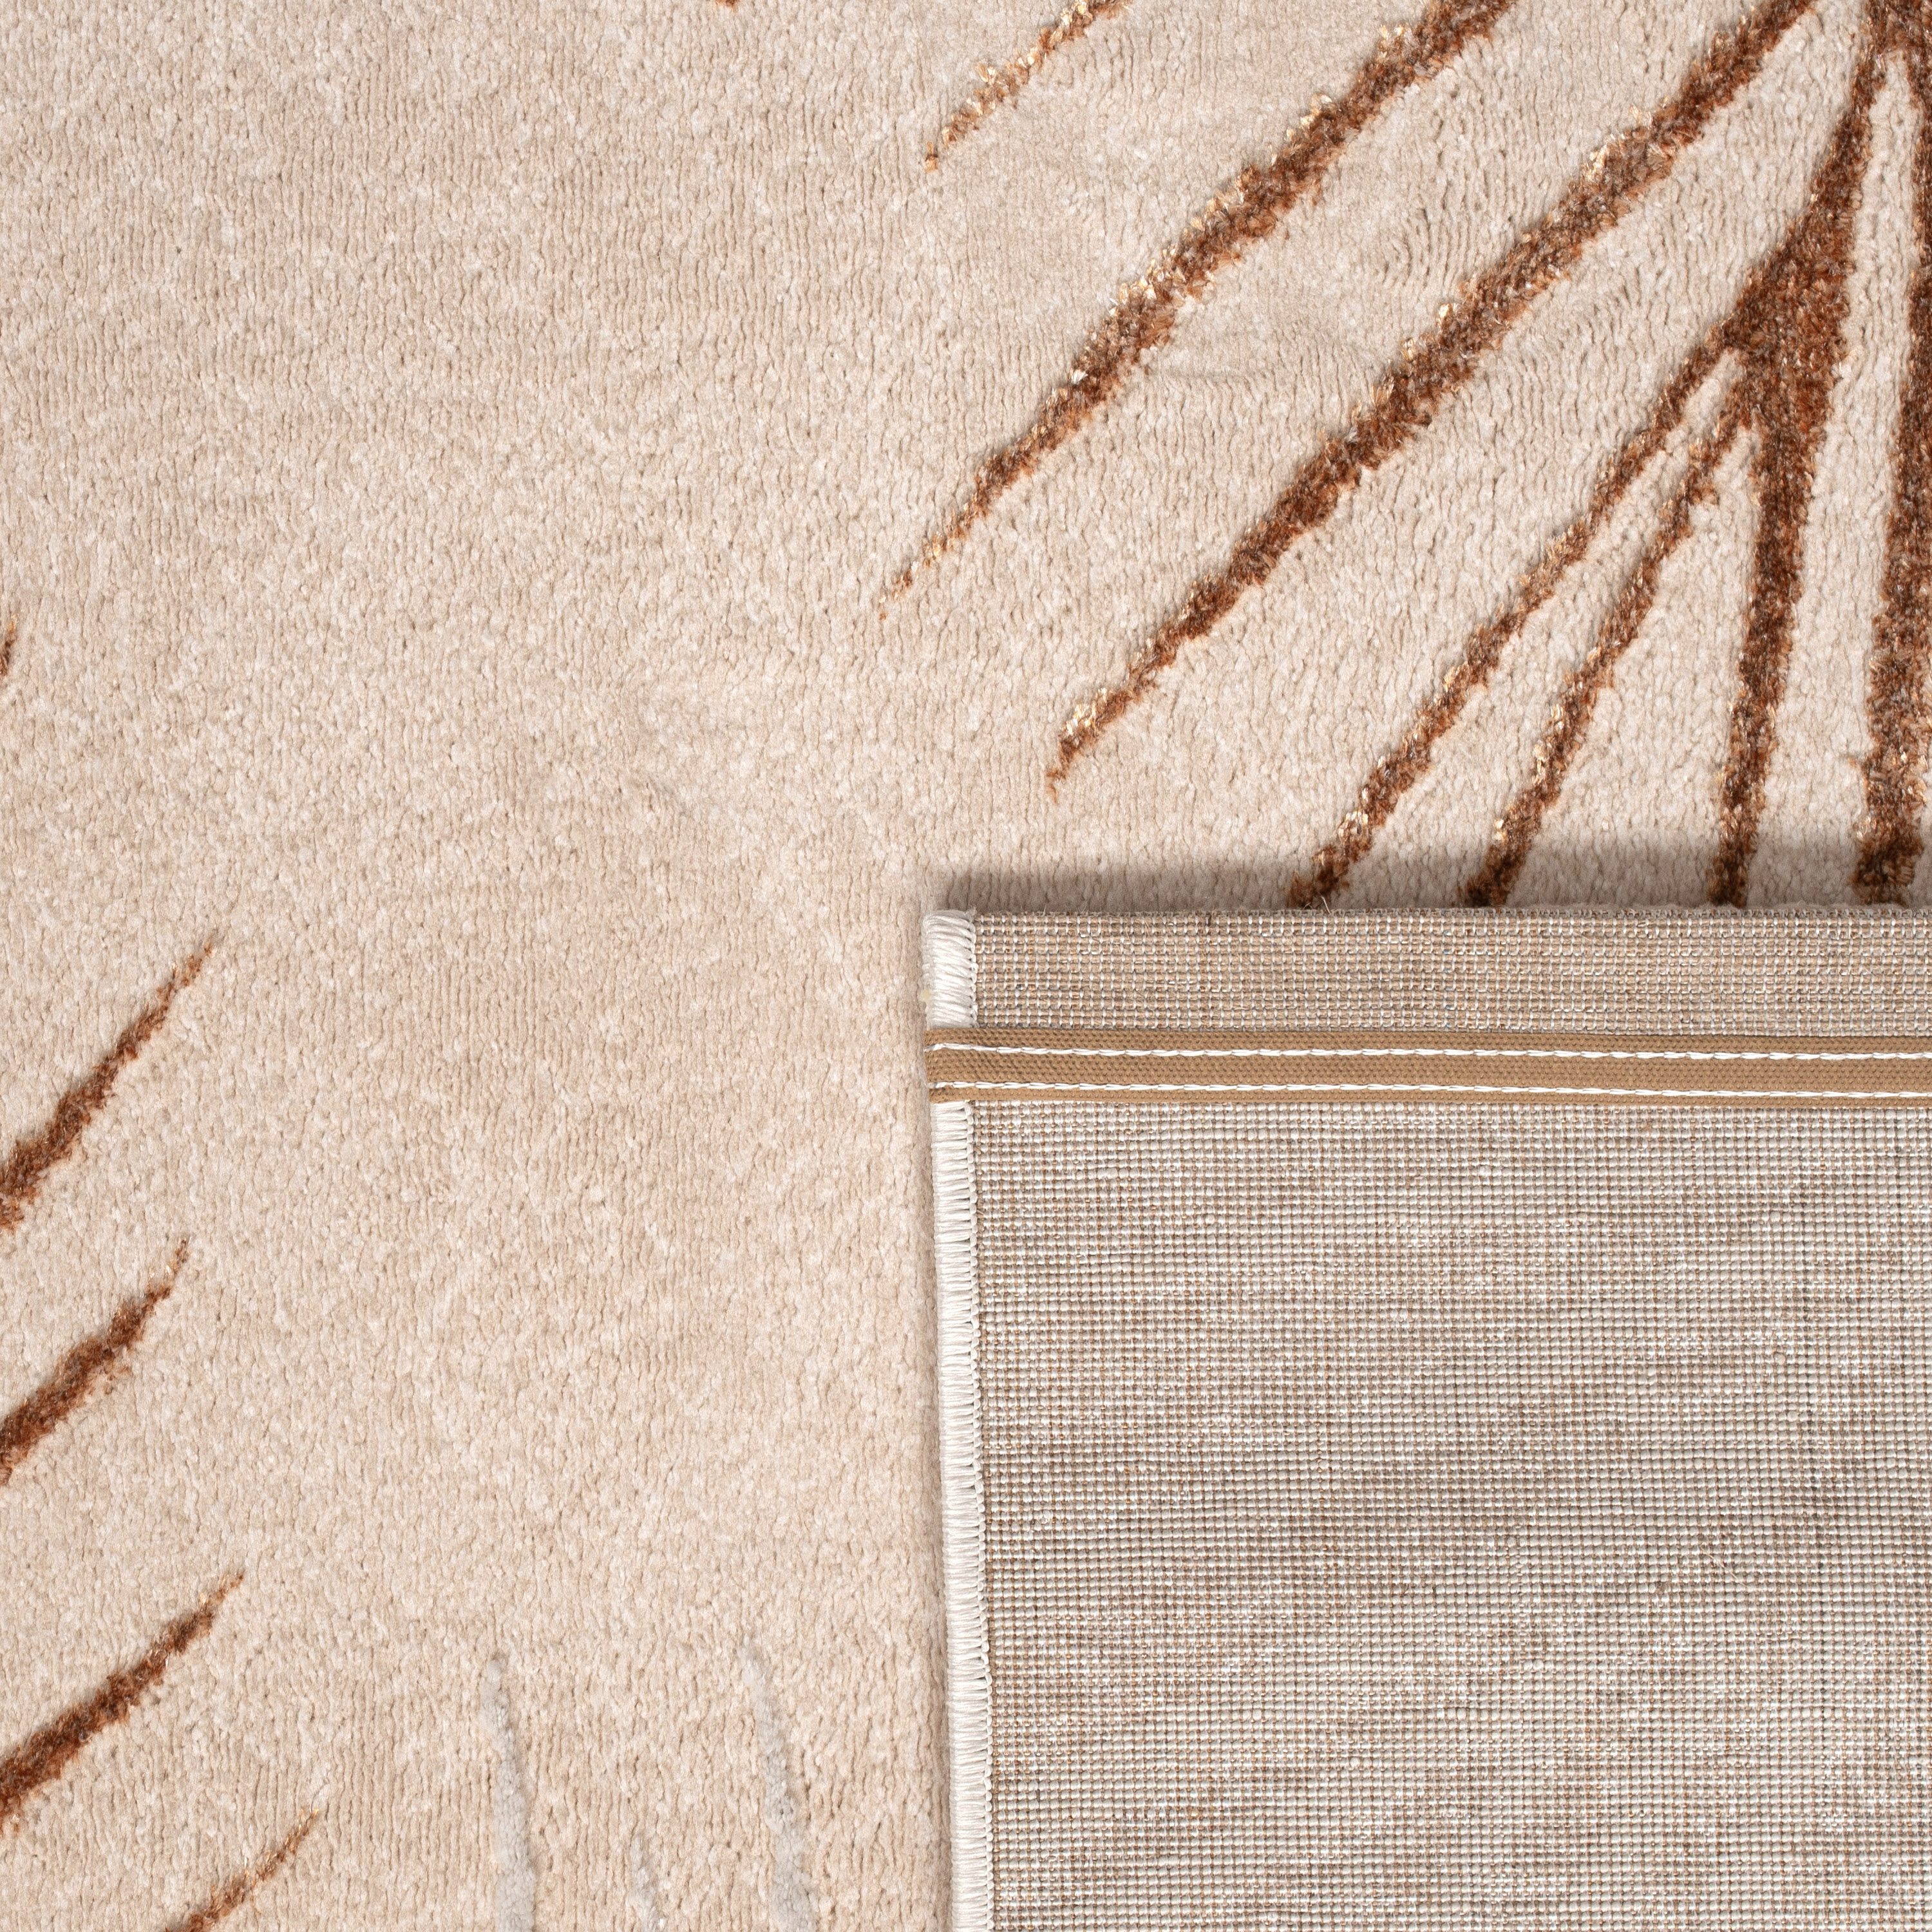 Teppich Esszimmer Palmenmuster Floral Modern Beige Modern